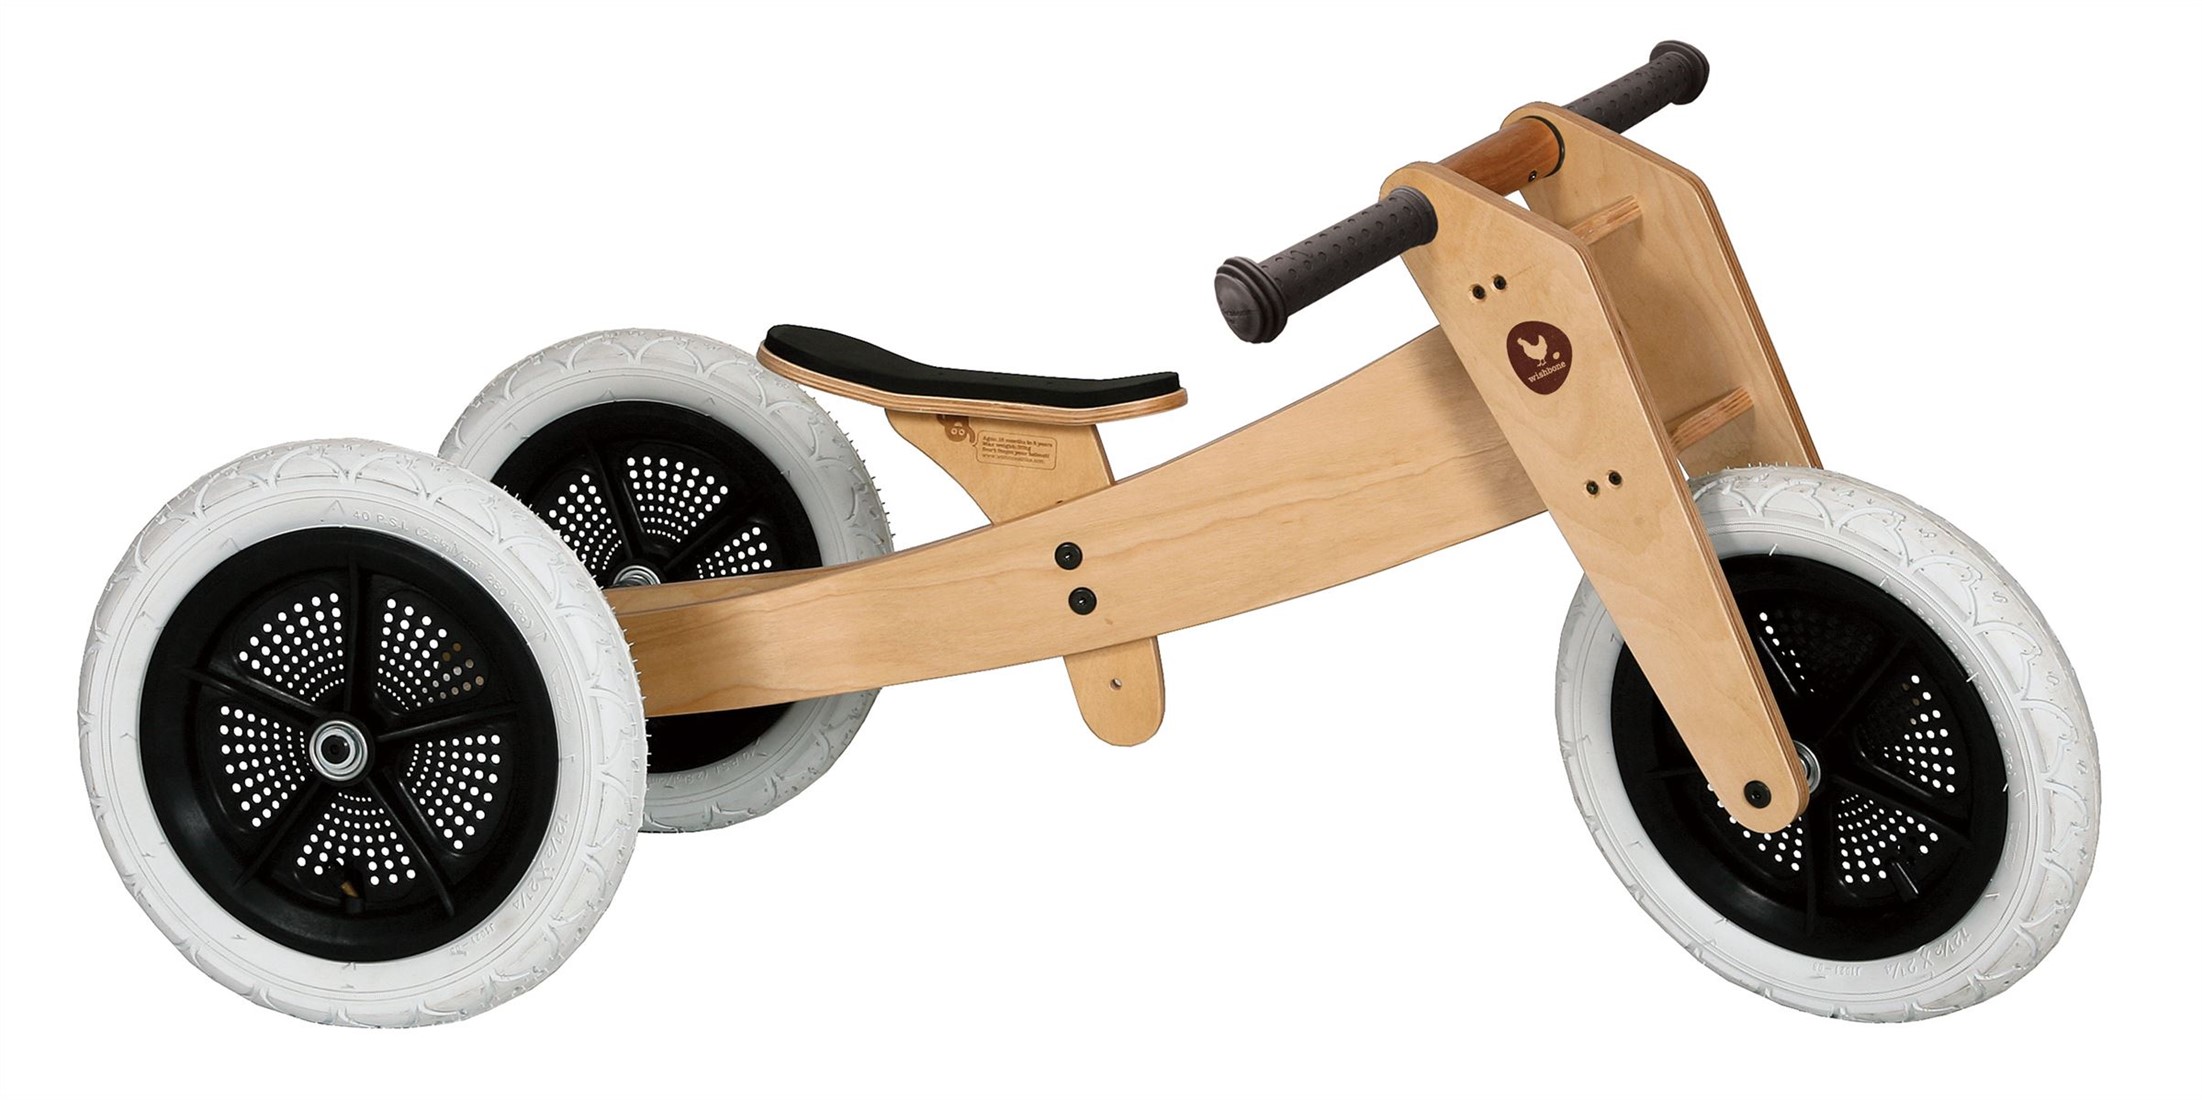 Telegraaf Pacifische eilanden Prestatie Wishbonebike Original 3-in-1 houten loopfiets - Naturel kopen?